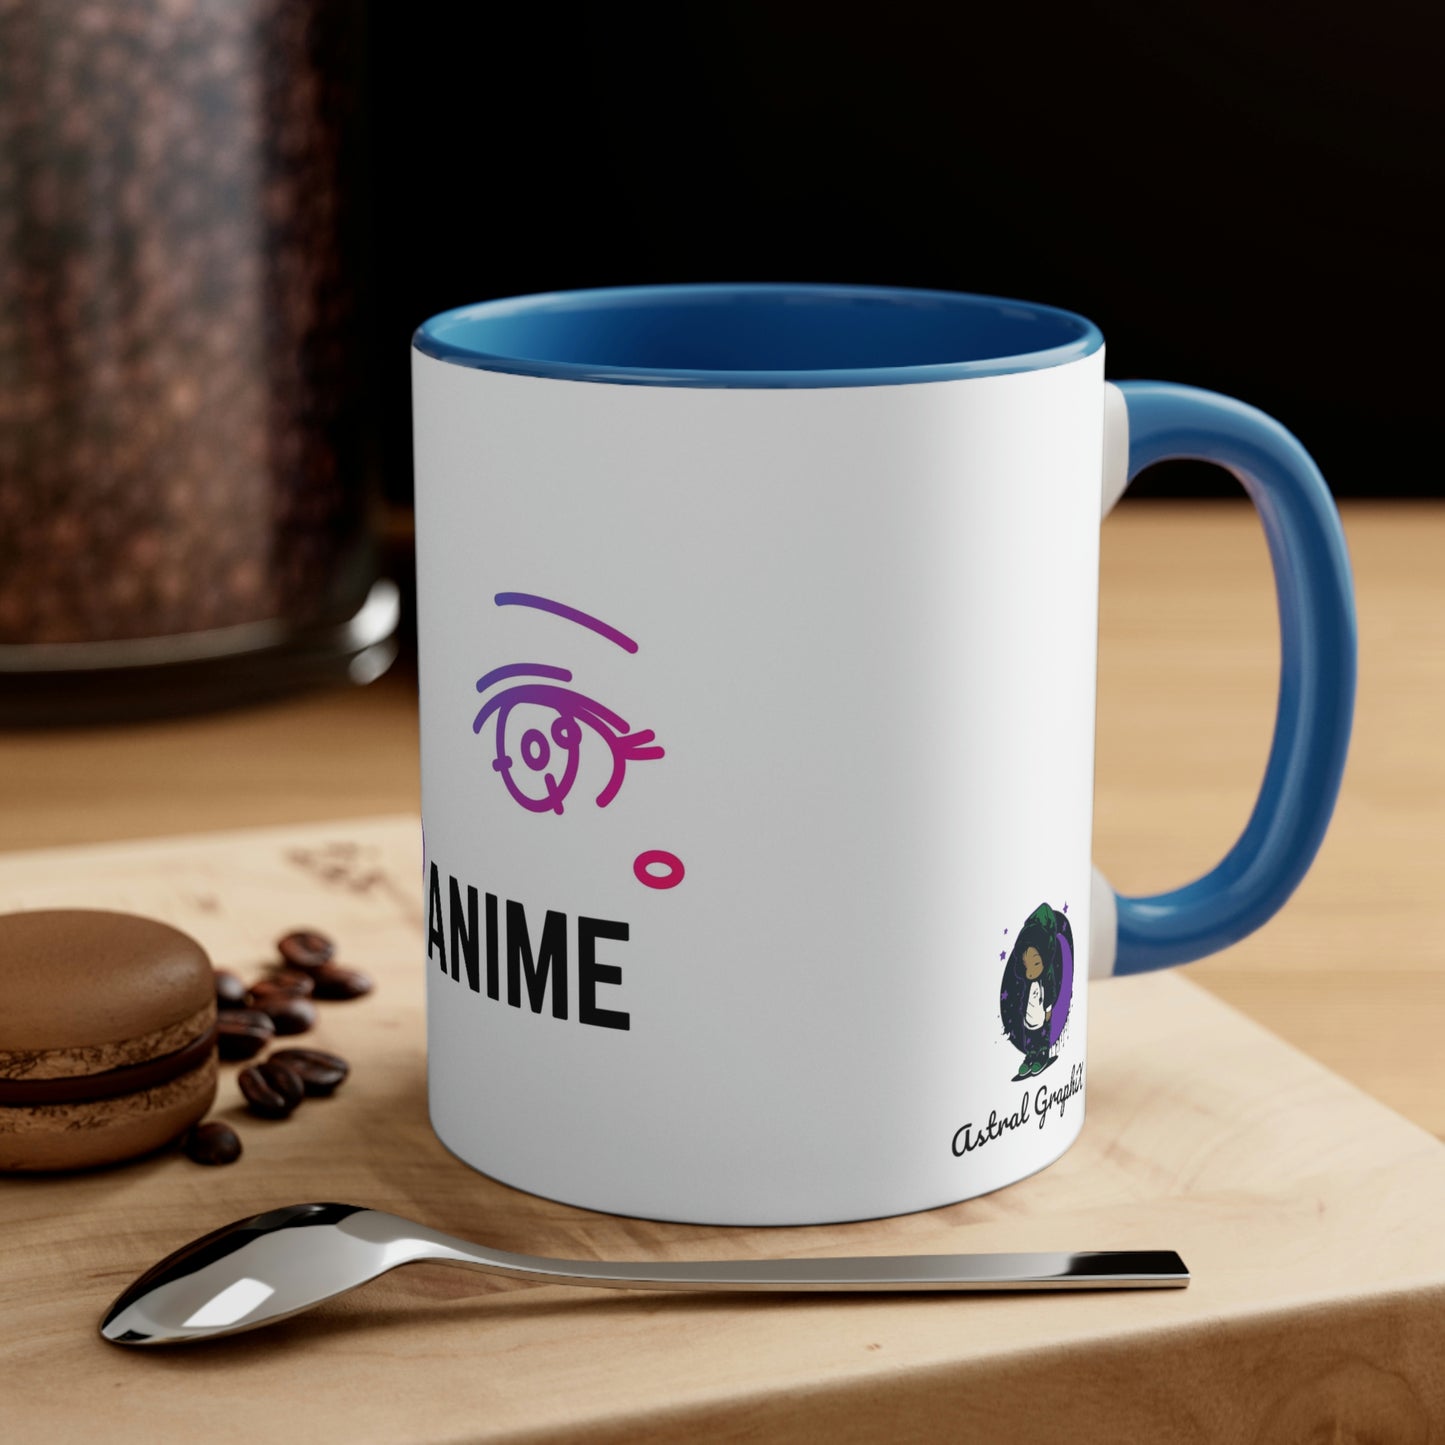 Anime Collection - Accent Coffee Mug, 11oz - I Heart Anime